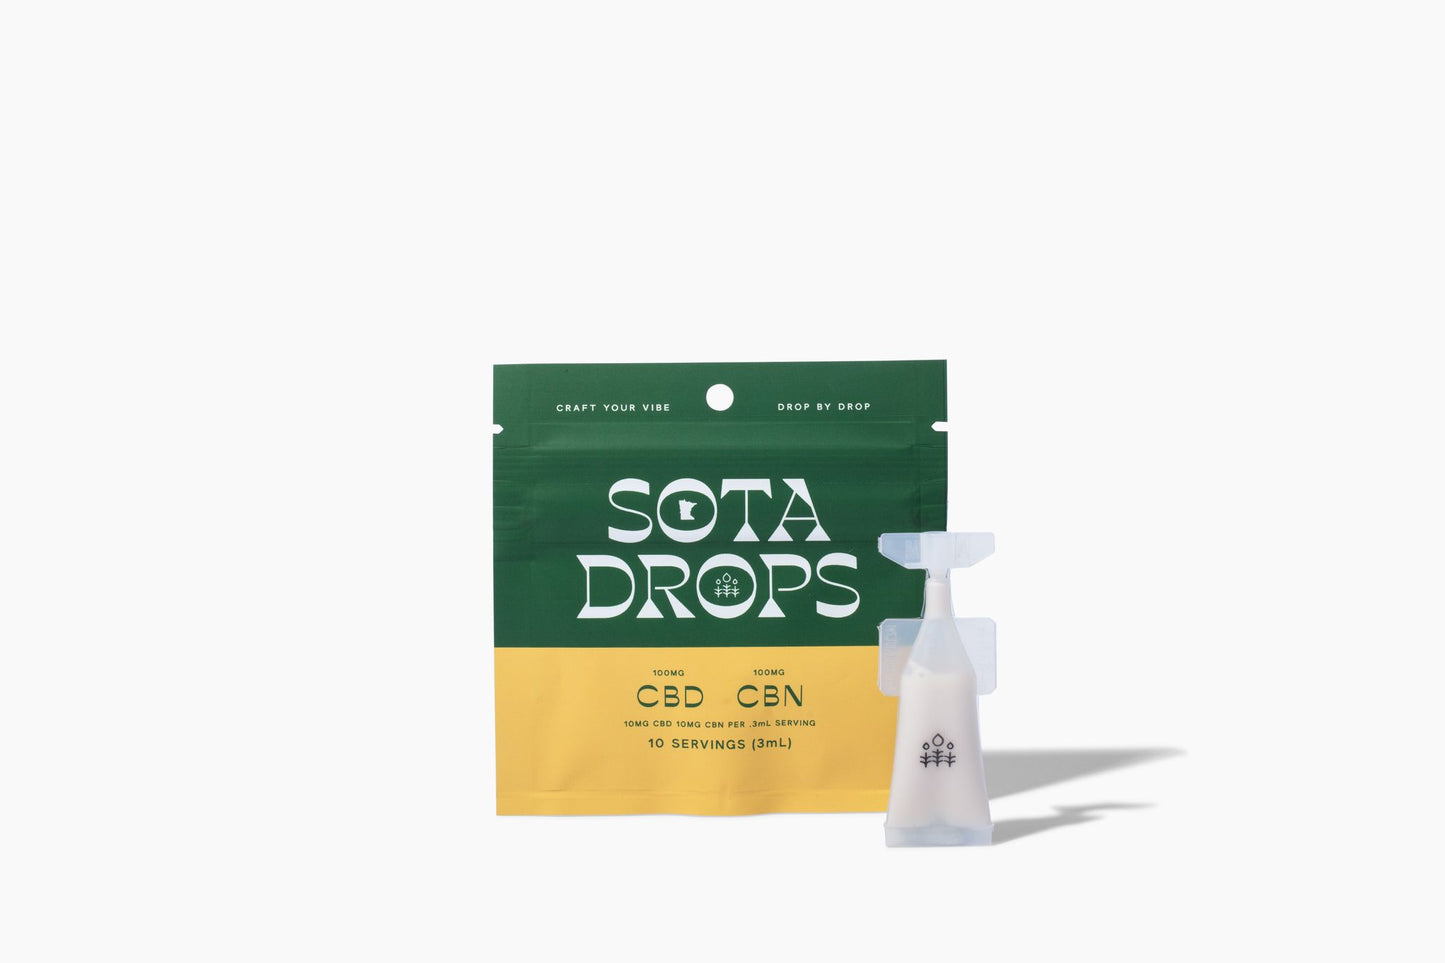 Sota Drops CBD + CBN made by Superior Molecular